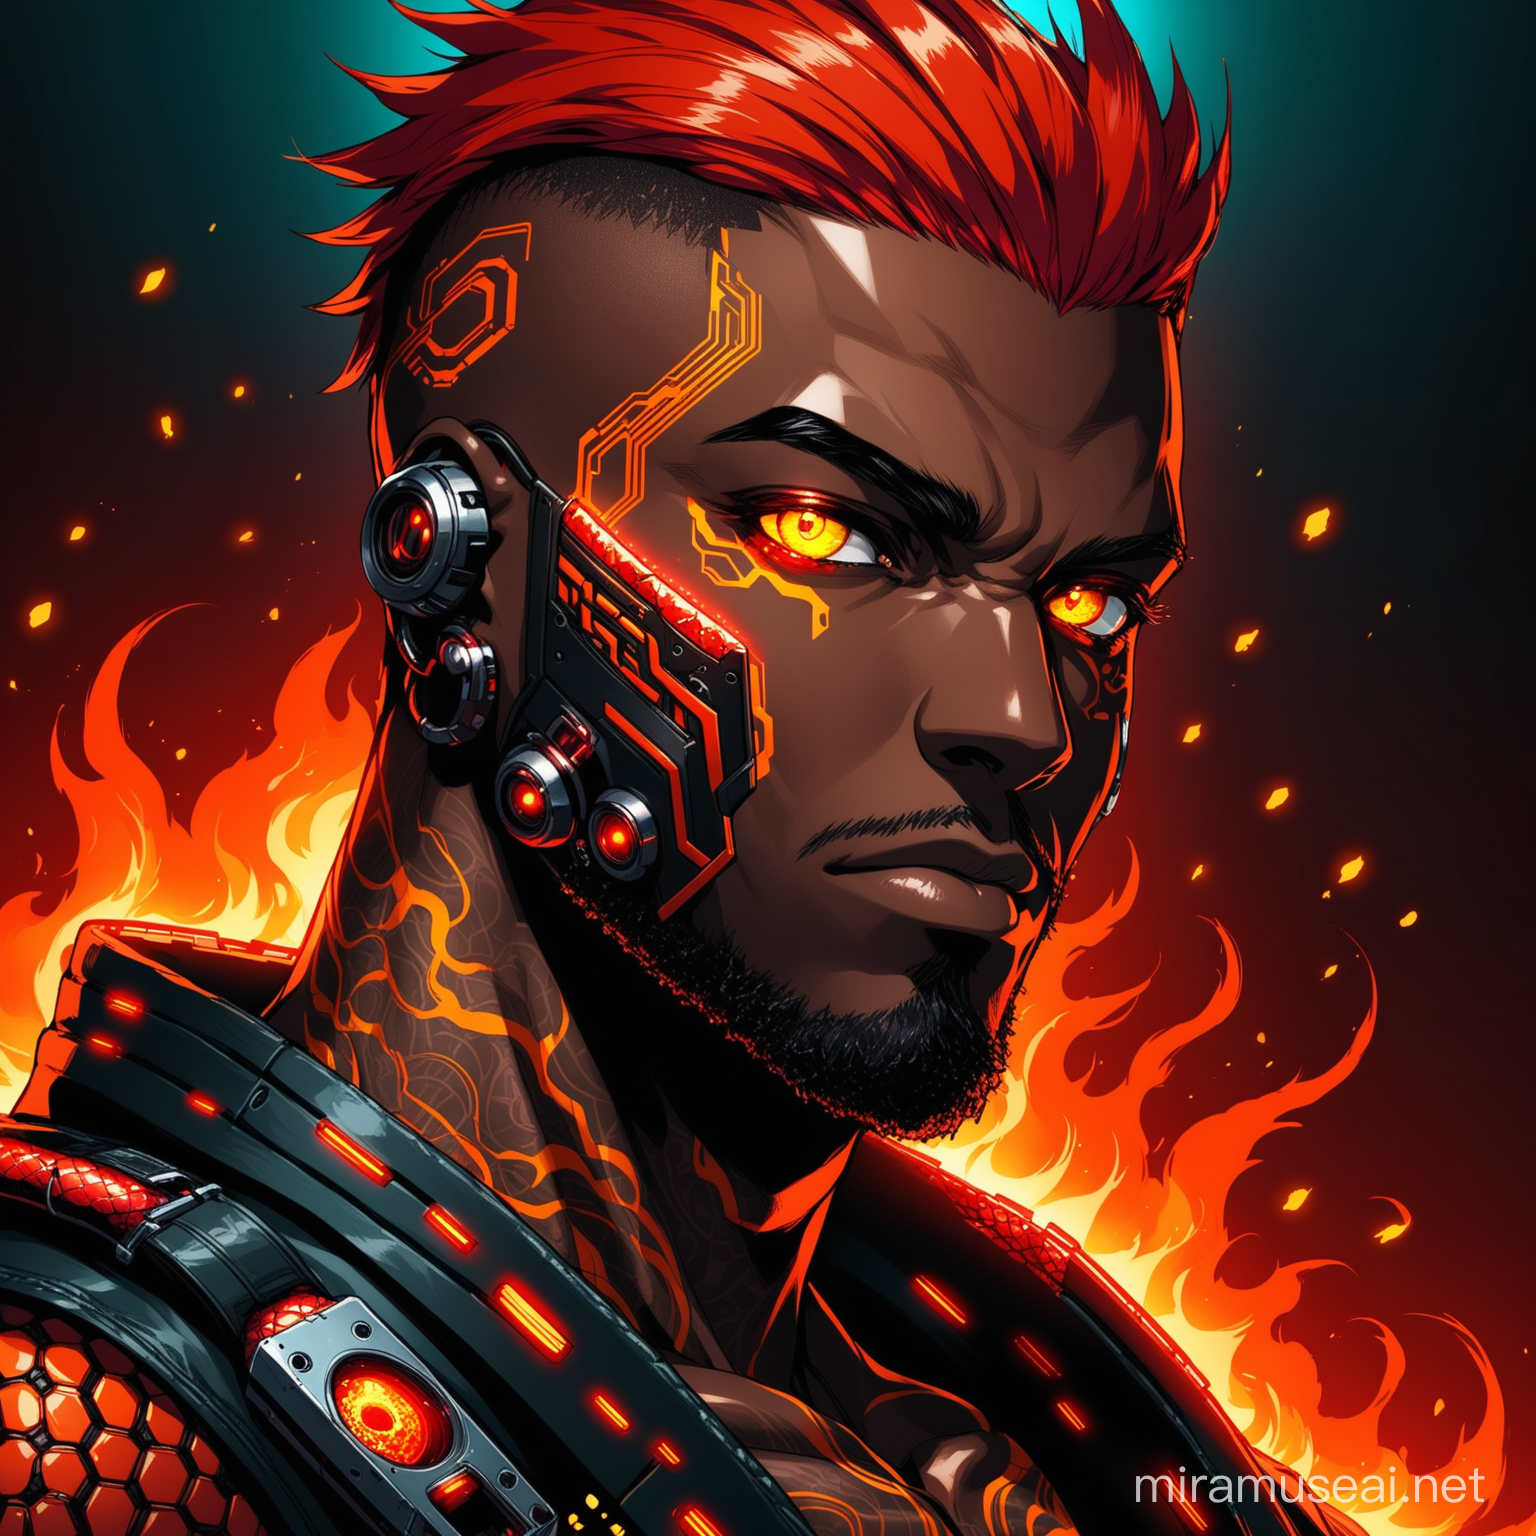 Fiery RedHaired Cyberpunk Man with Piercing Snake Eyes in Dark Portrait